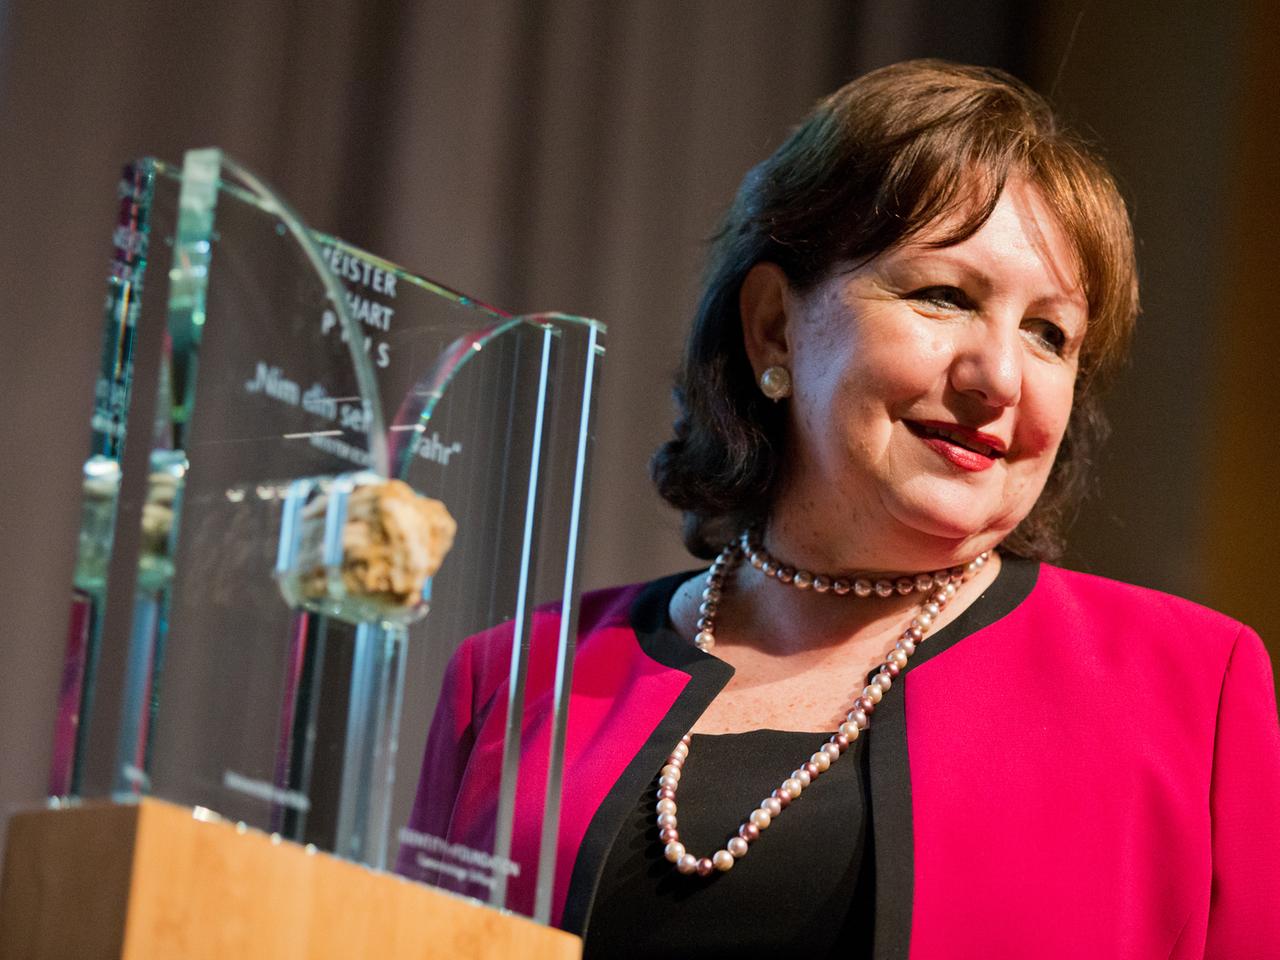 Die türkisch-amerikanische Philosophin Seyla Benhabib erhält am 19.05.2014 im Rahmen der Phil.Cologne in Köln (Nordrhein-Westfalen) den mit 50.000 Euro dotierten Meister-Eckhart-Preis.